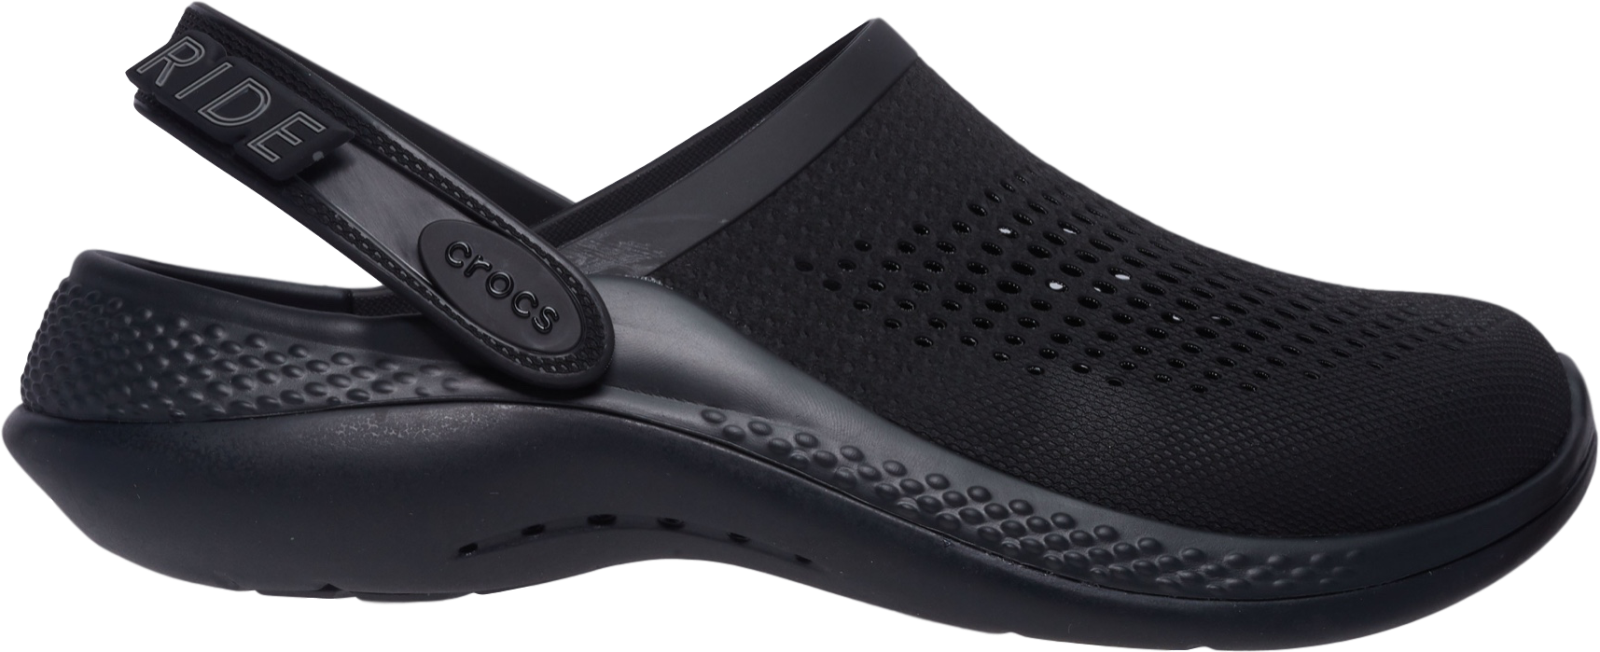 Pánské boty crocs literide 360 černá/černá 42-43